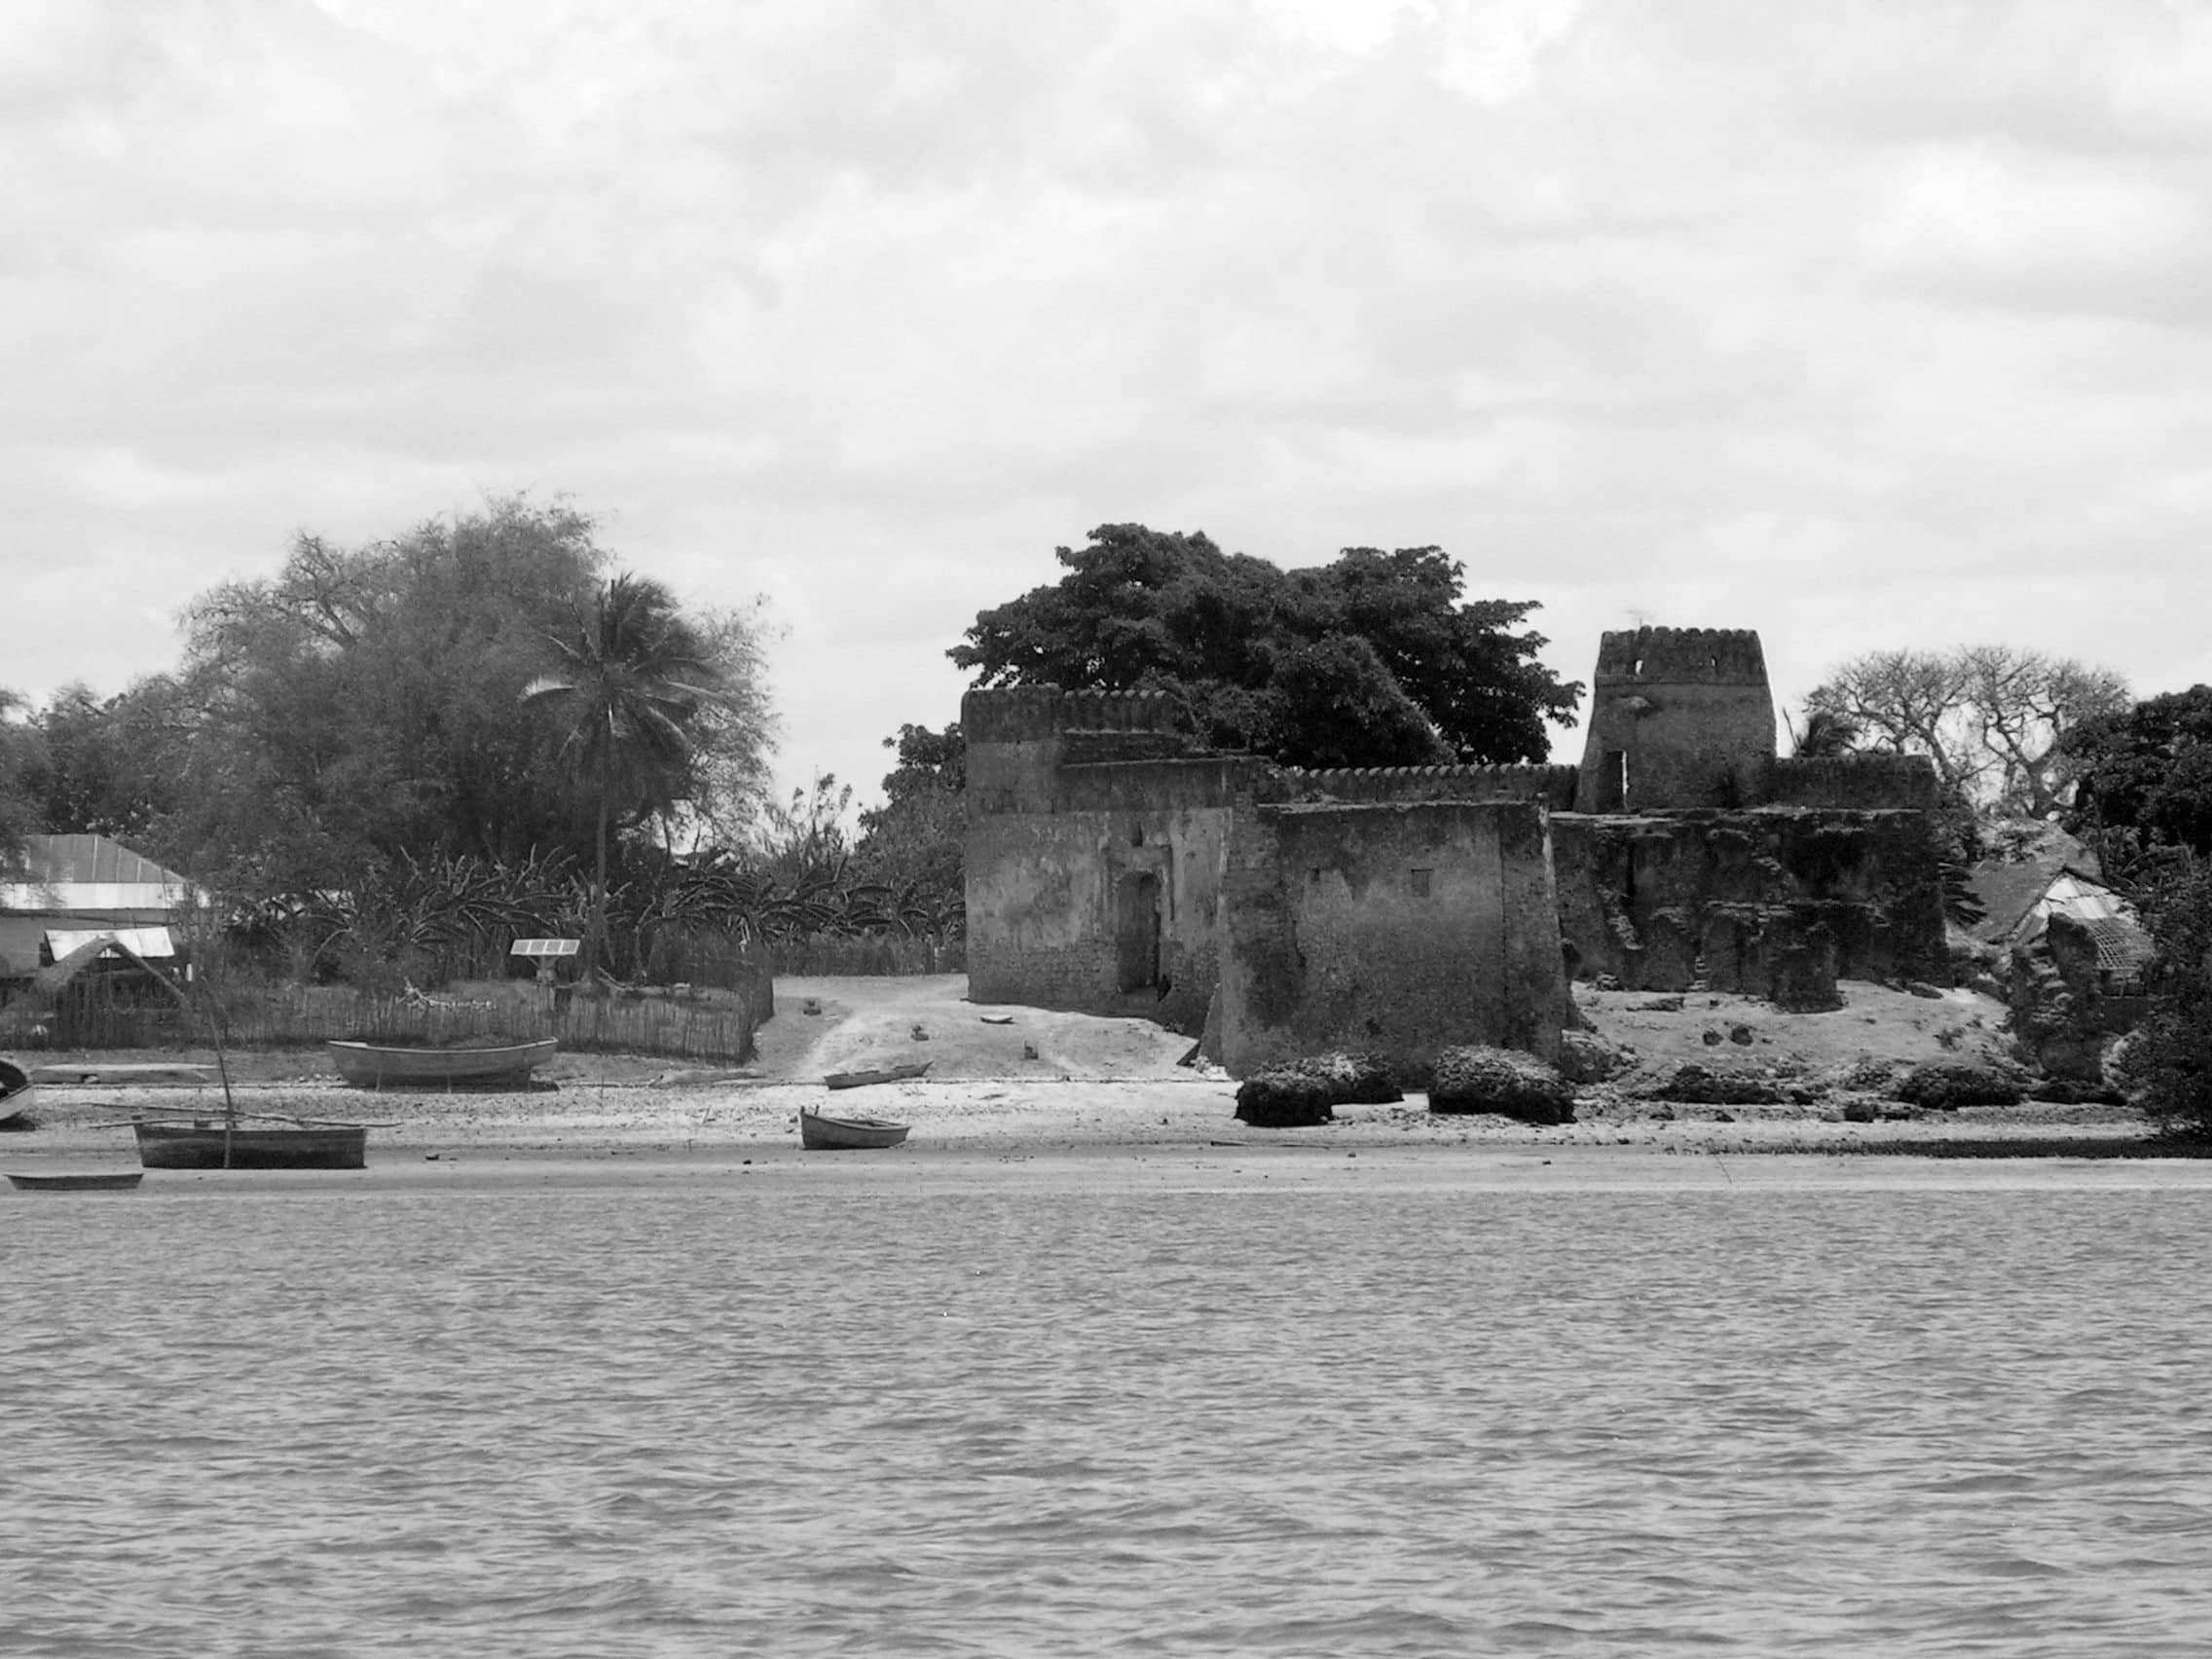 Portuguese Fort (Gereza) in Kilwa Kisiwani